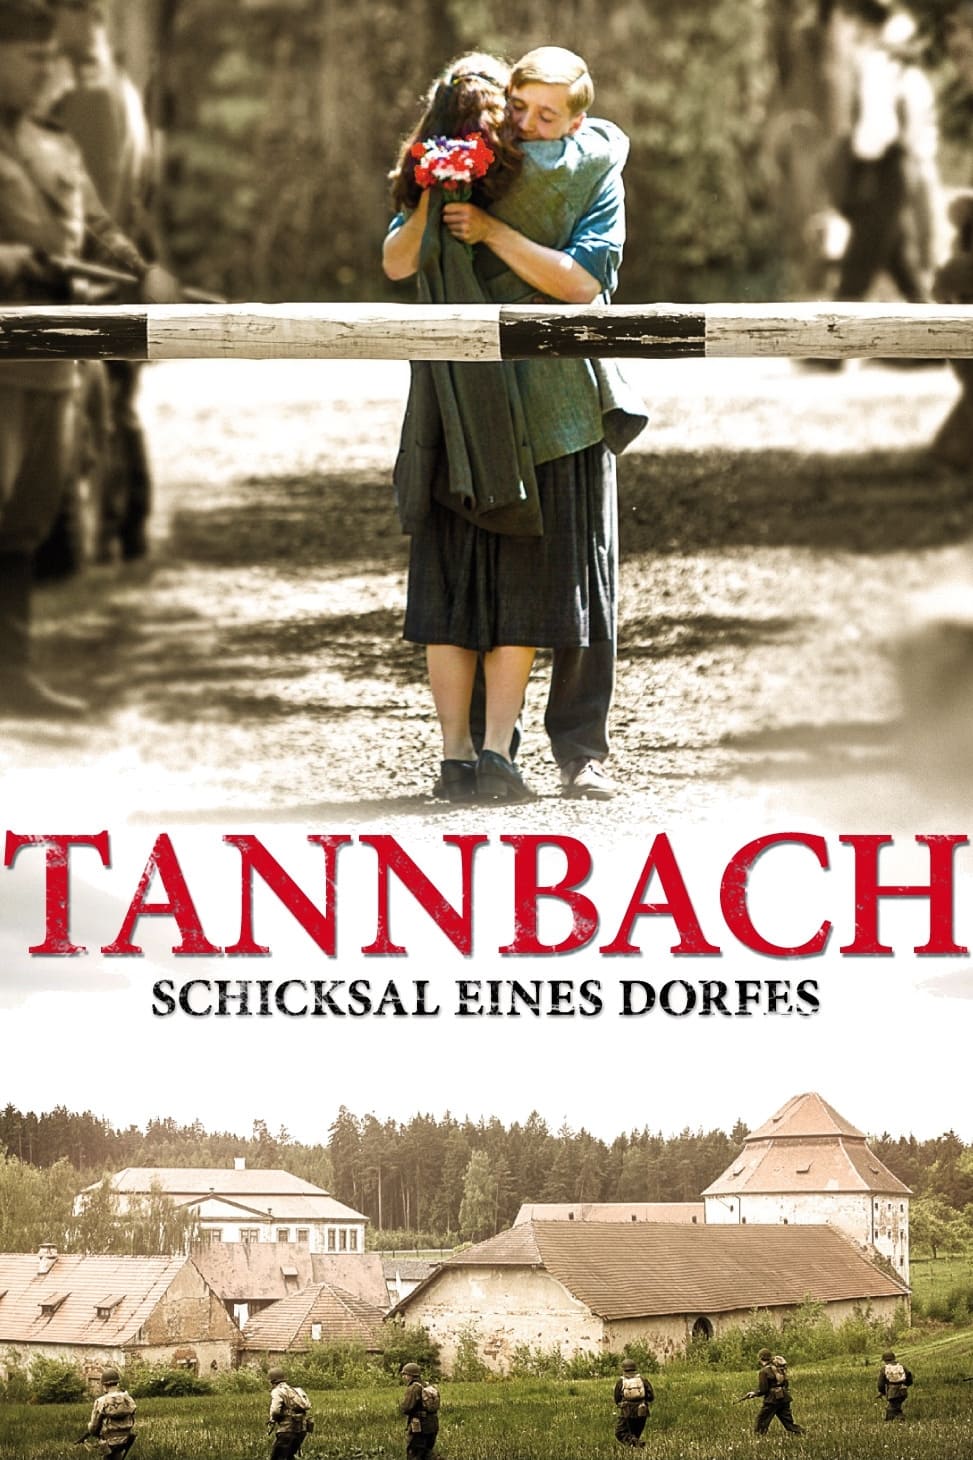 Tannbach – Schicksal eines Dorfes TV Shows About Cold War